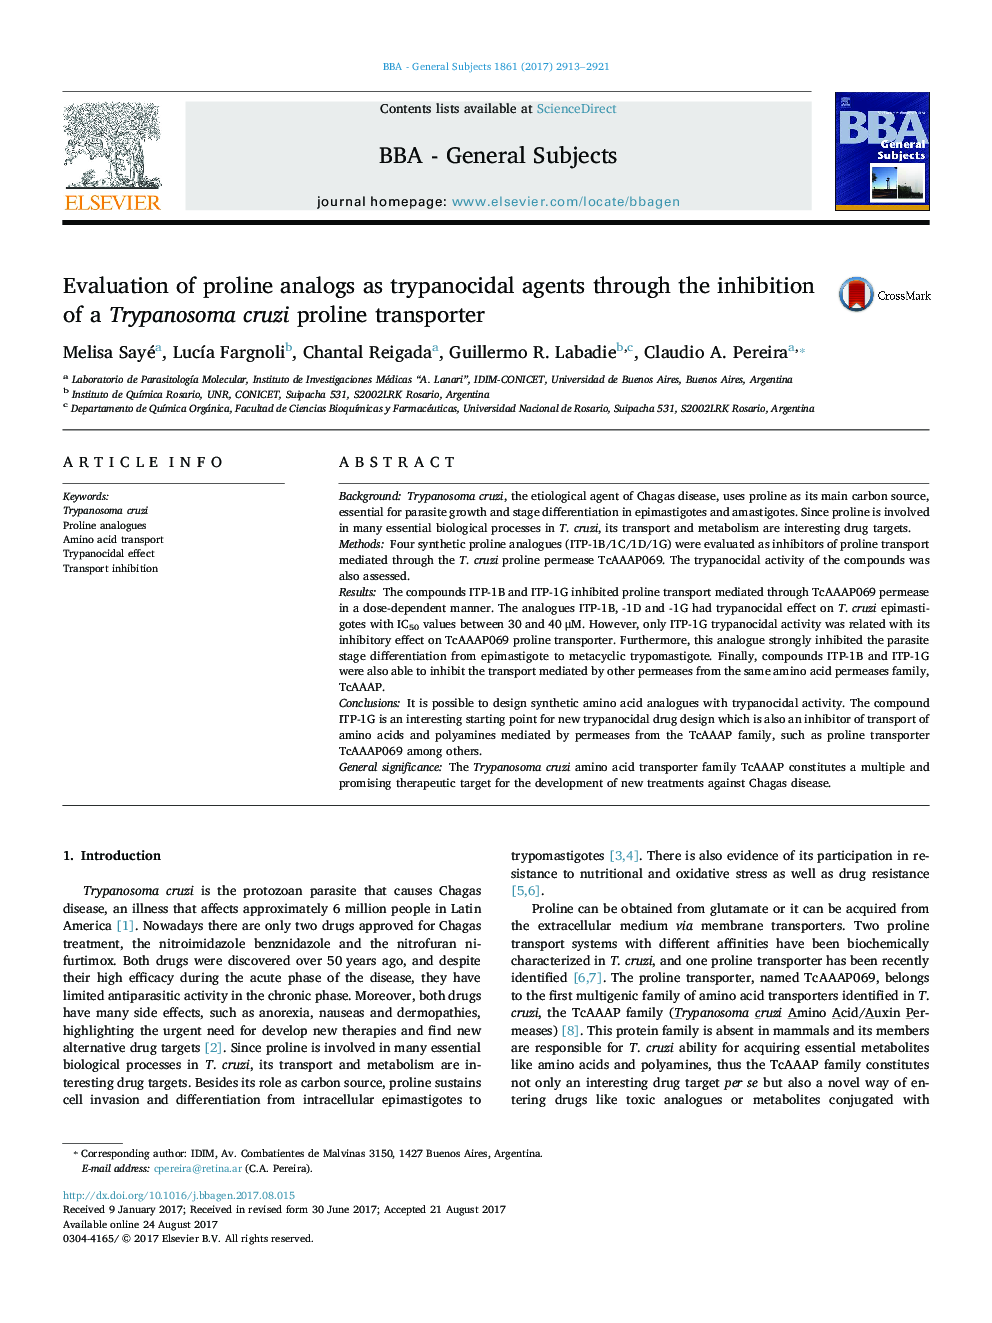 ارزیابی آنالوگهای پرولین به عنوان عوامل تریپانوسیکید از طریق مهار پروپیلن ترپانوسوم کرزی 